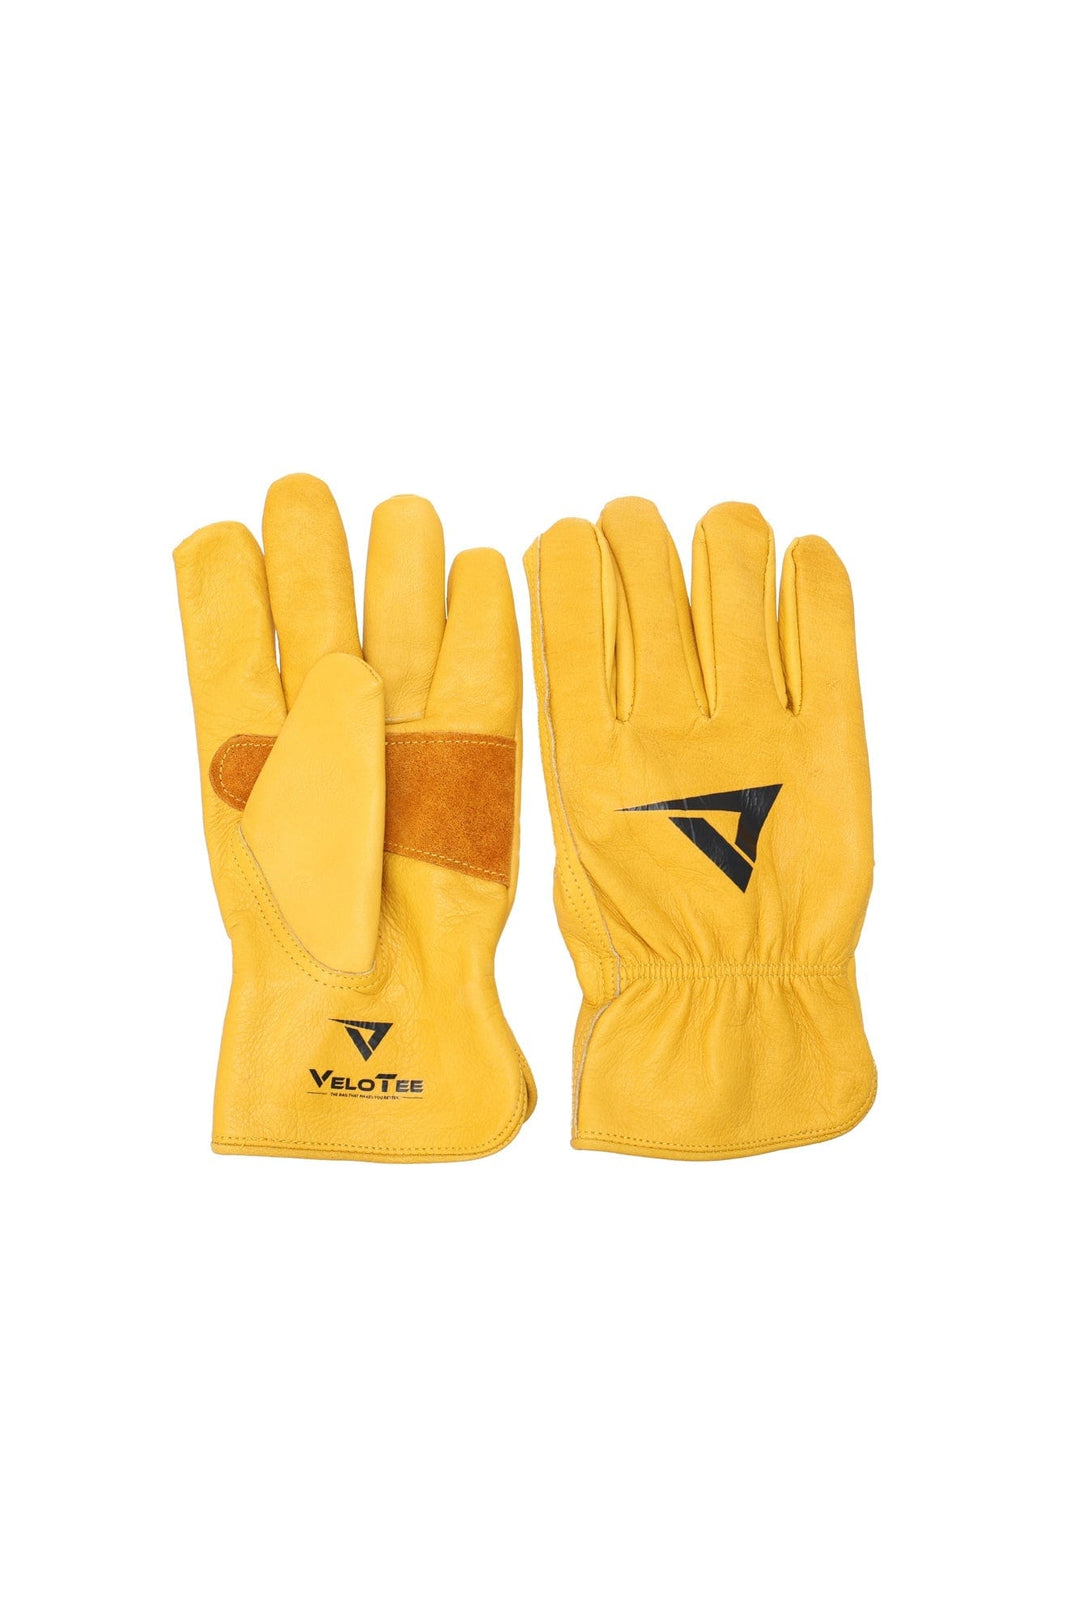 VeloTee Batting Gloves S VeloTee "Yard Work" Baseball & Softball Batting Gloves